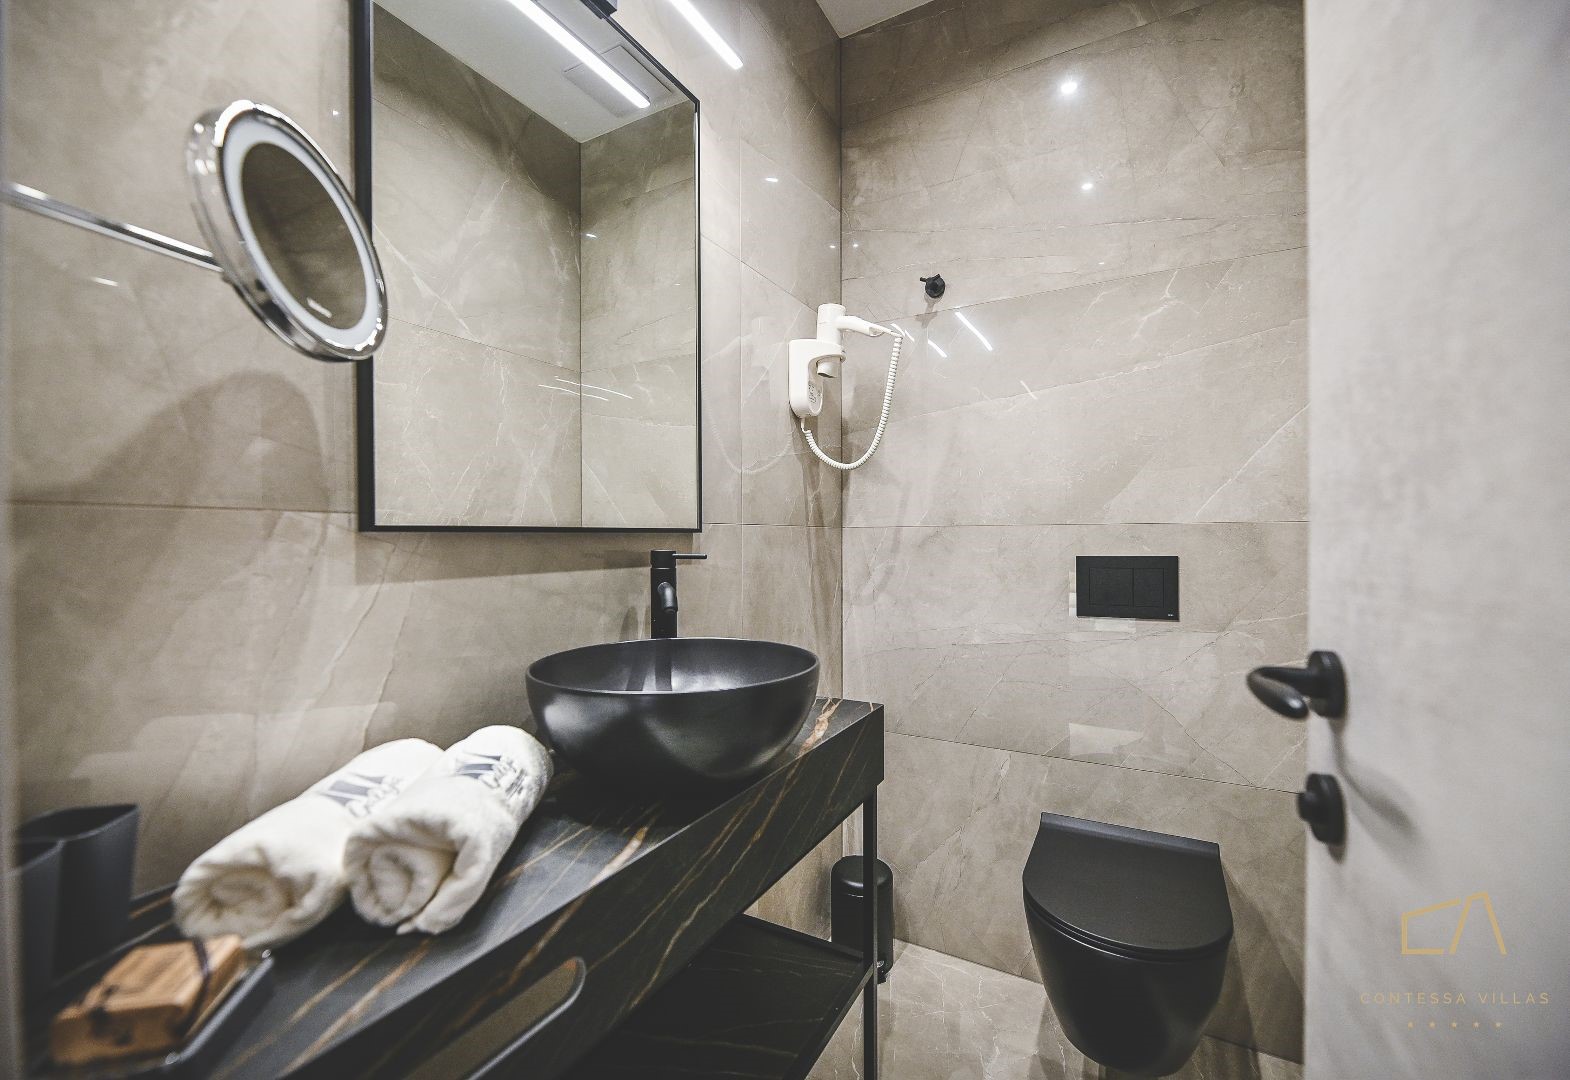 Galija Luxury Suites: luksuzni smještaj uređen u jedinstvenom stilu!